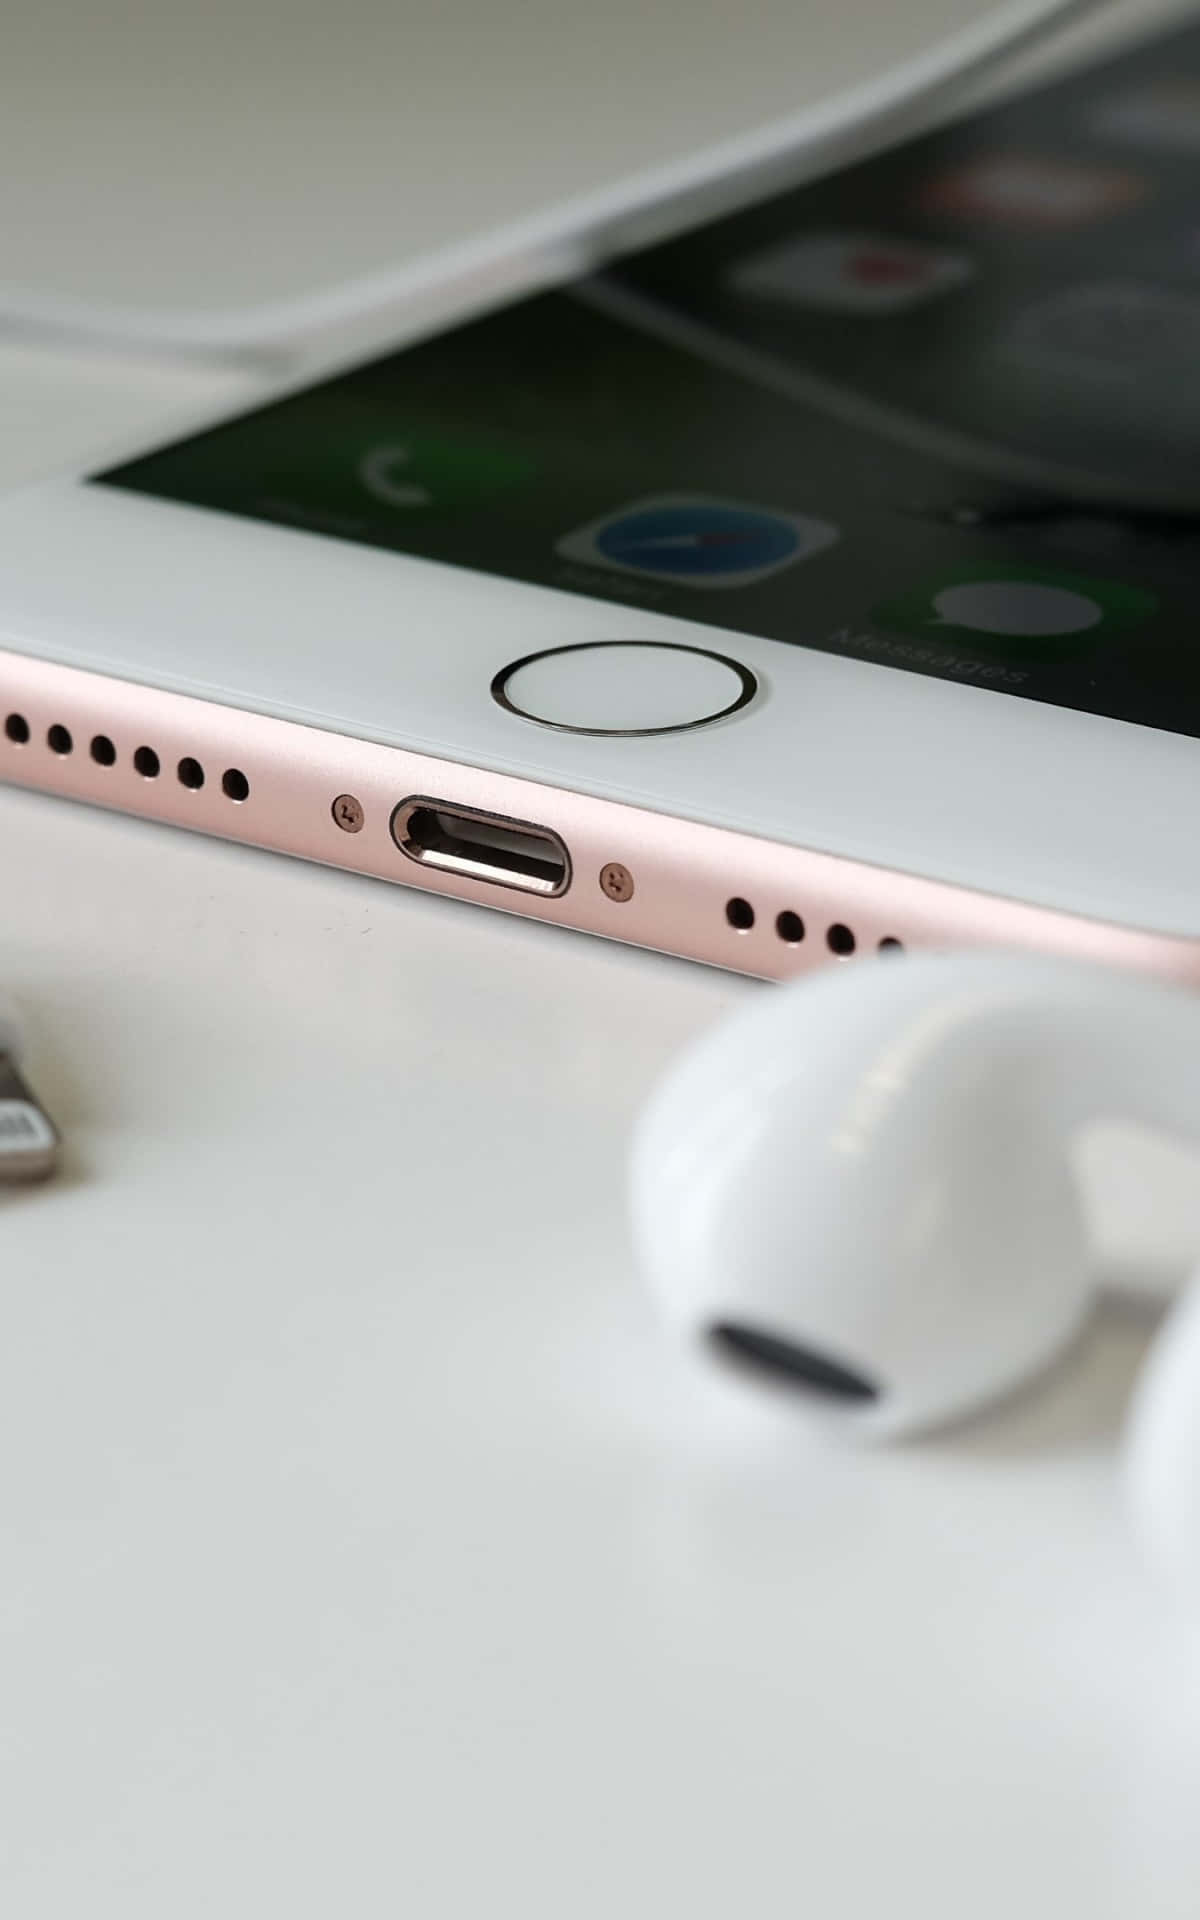 Dasbeste Iphone 7 Plus: Bereiten Sie Sich Auf Das Erlebnis Von Technischem Luxus Vor Wallpaper